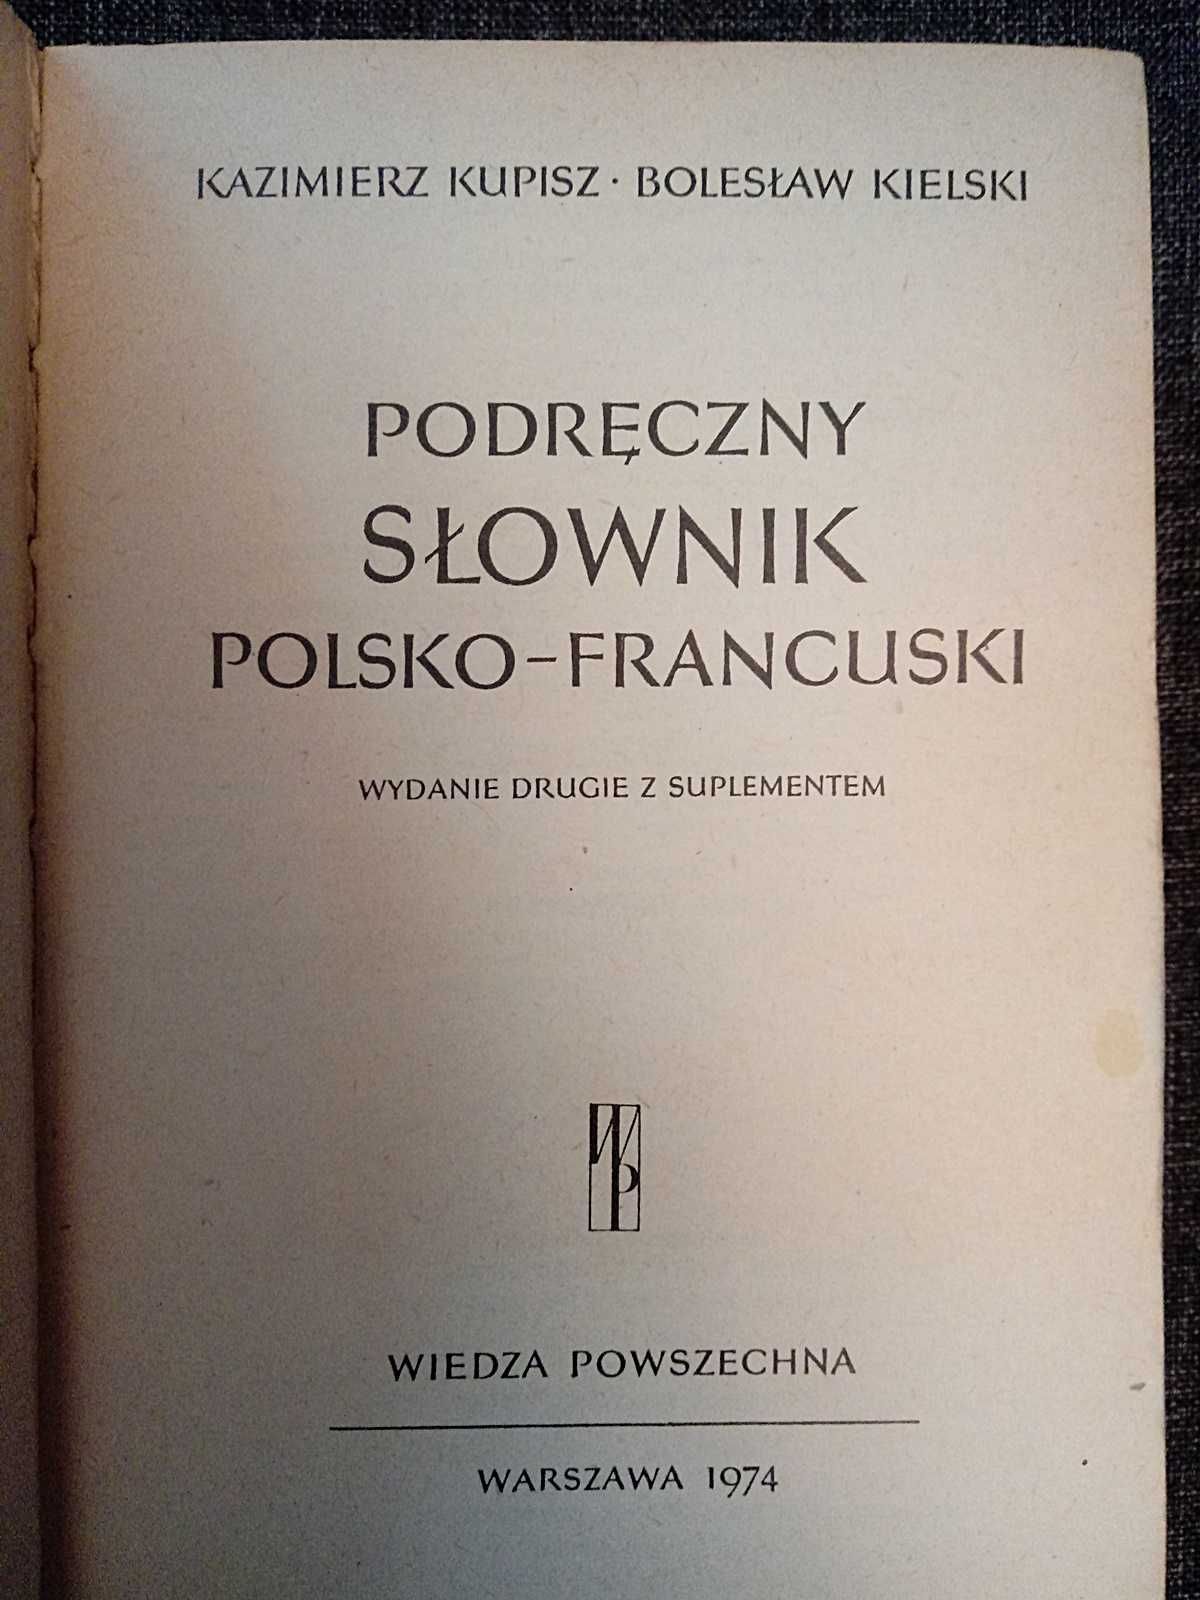 Wielki Słownik Polsko-Francuski 1150str. 1974r